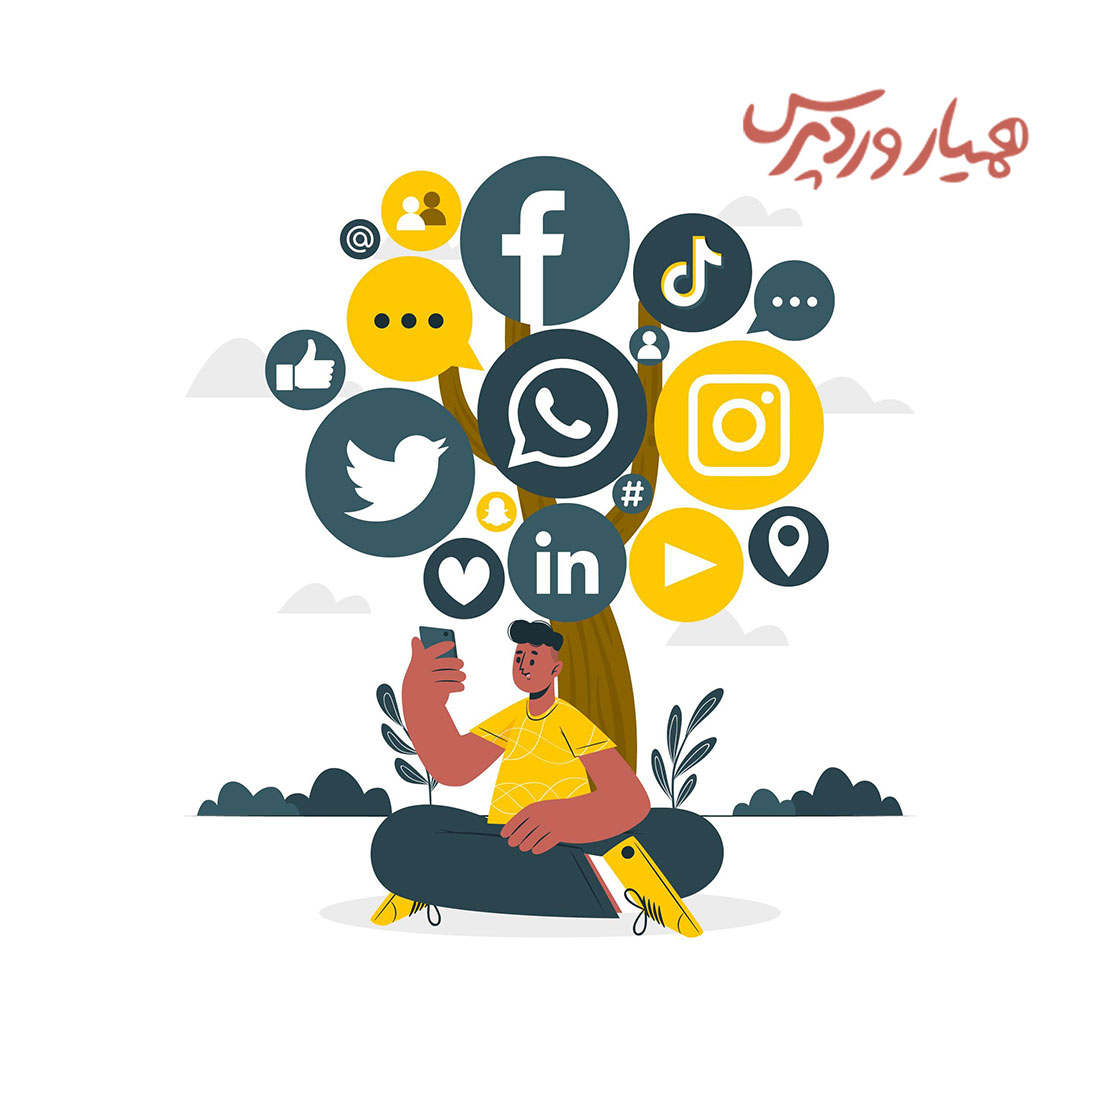 سوشال مدیا مارکینگ Social Media Marketing یا بازاریابی شبکه های اجتماعی چیست ؟